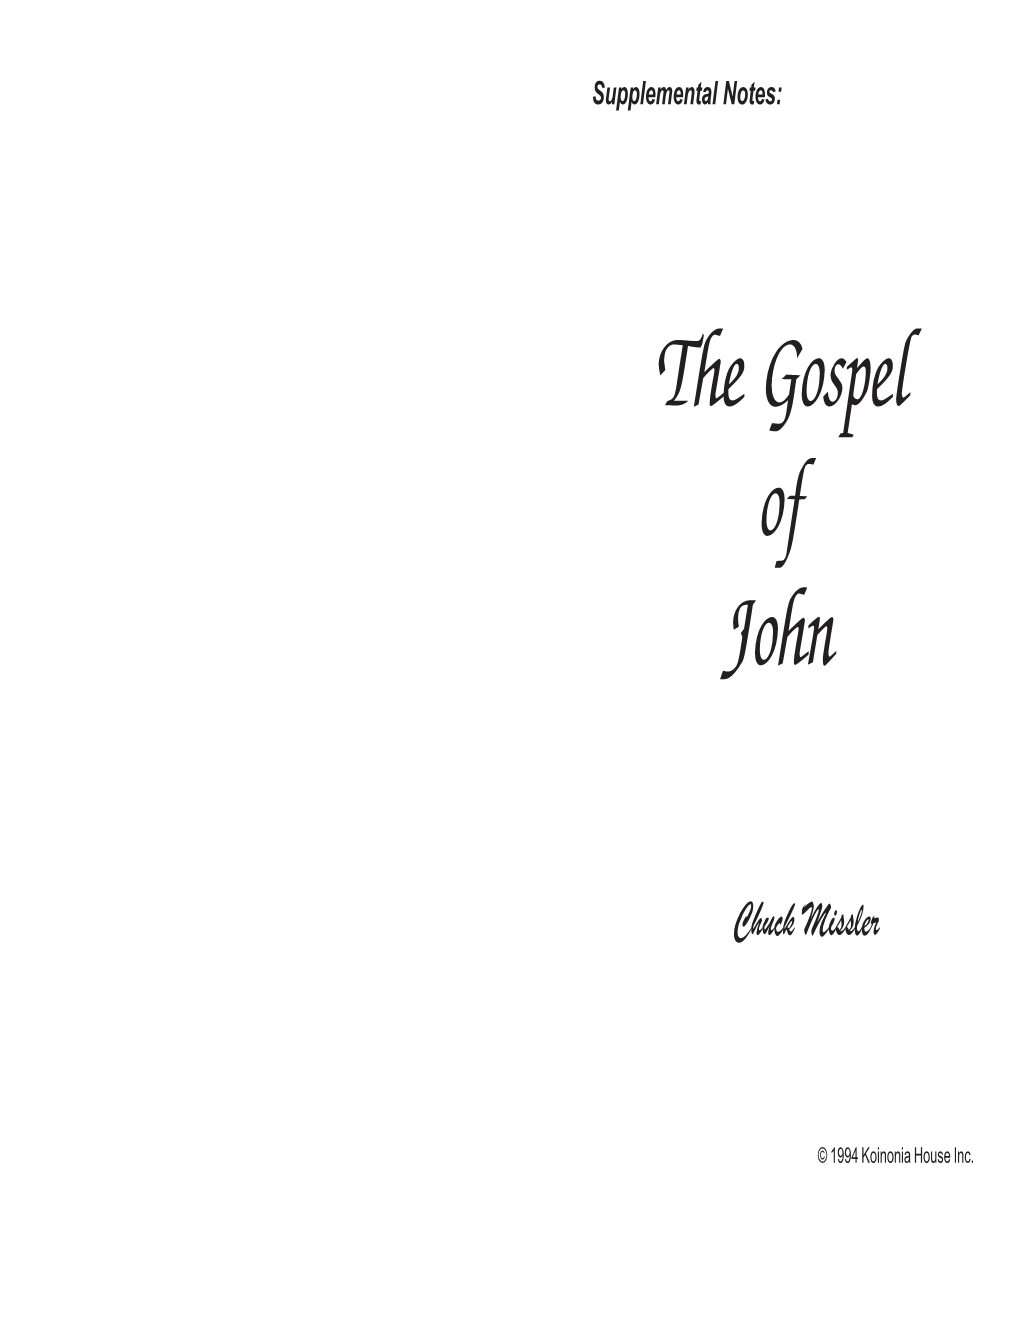 The Gospel of John Chuck Missler